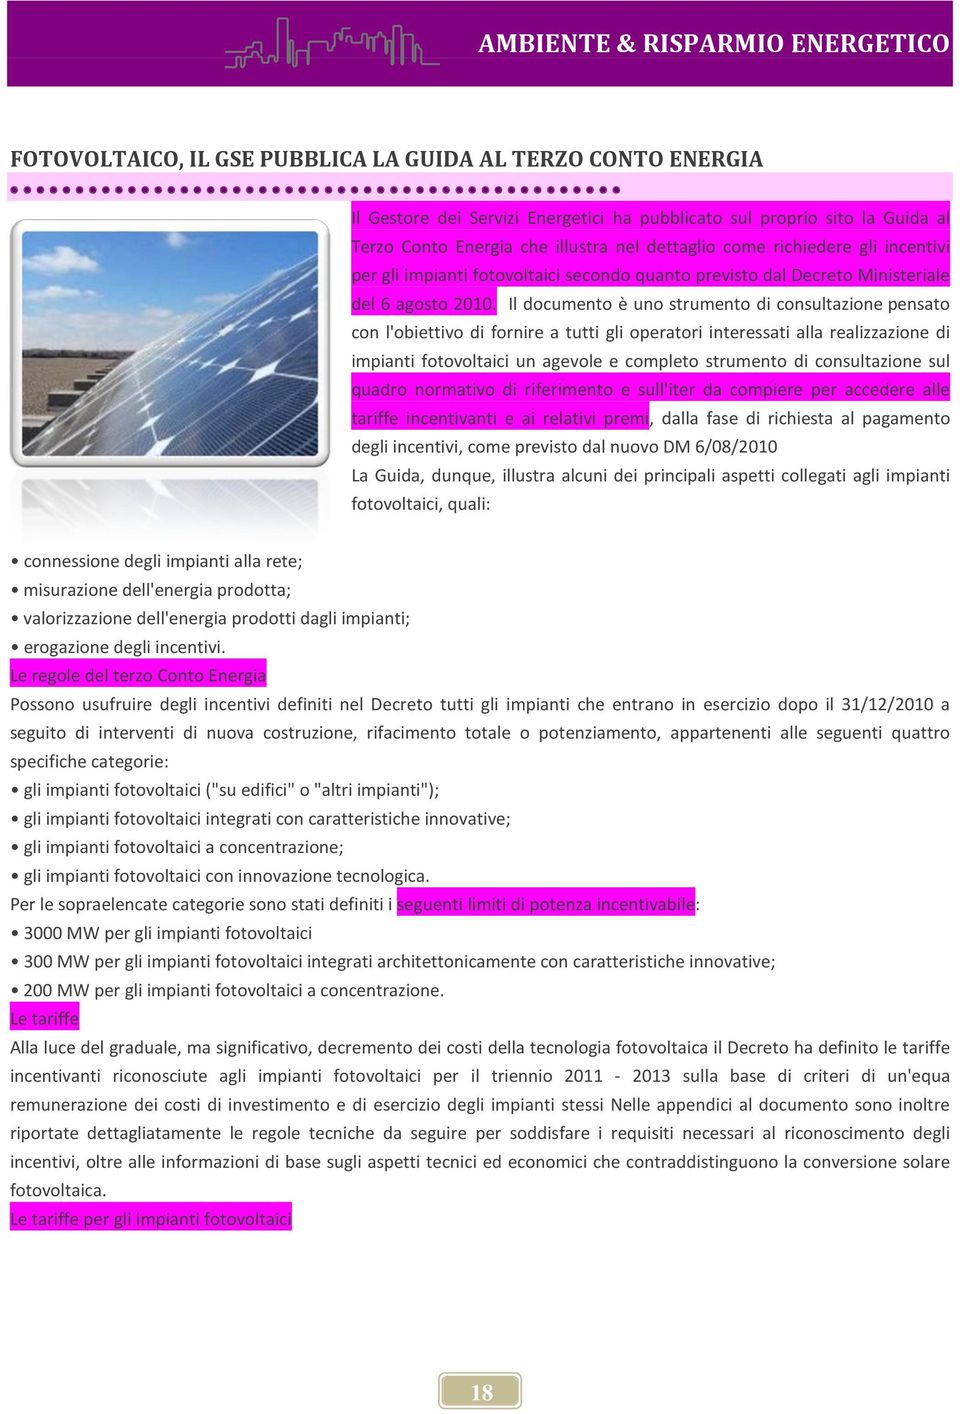 Il documento è uno strumento di consultazione pensato con l'obiettivo di fornire a tutti gli operatori interessati alla realizzazione di impianti fotovoltaici un agevole e completo strumento di